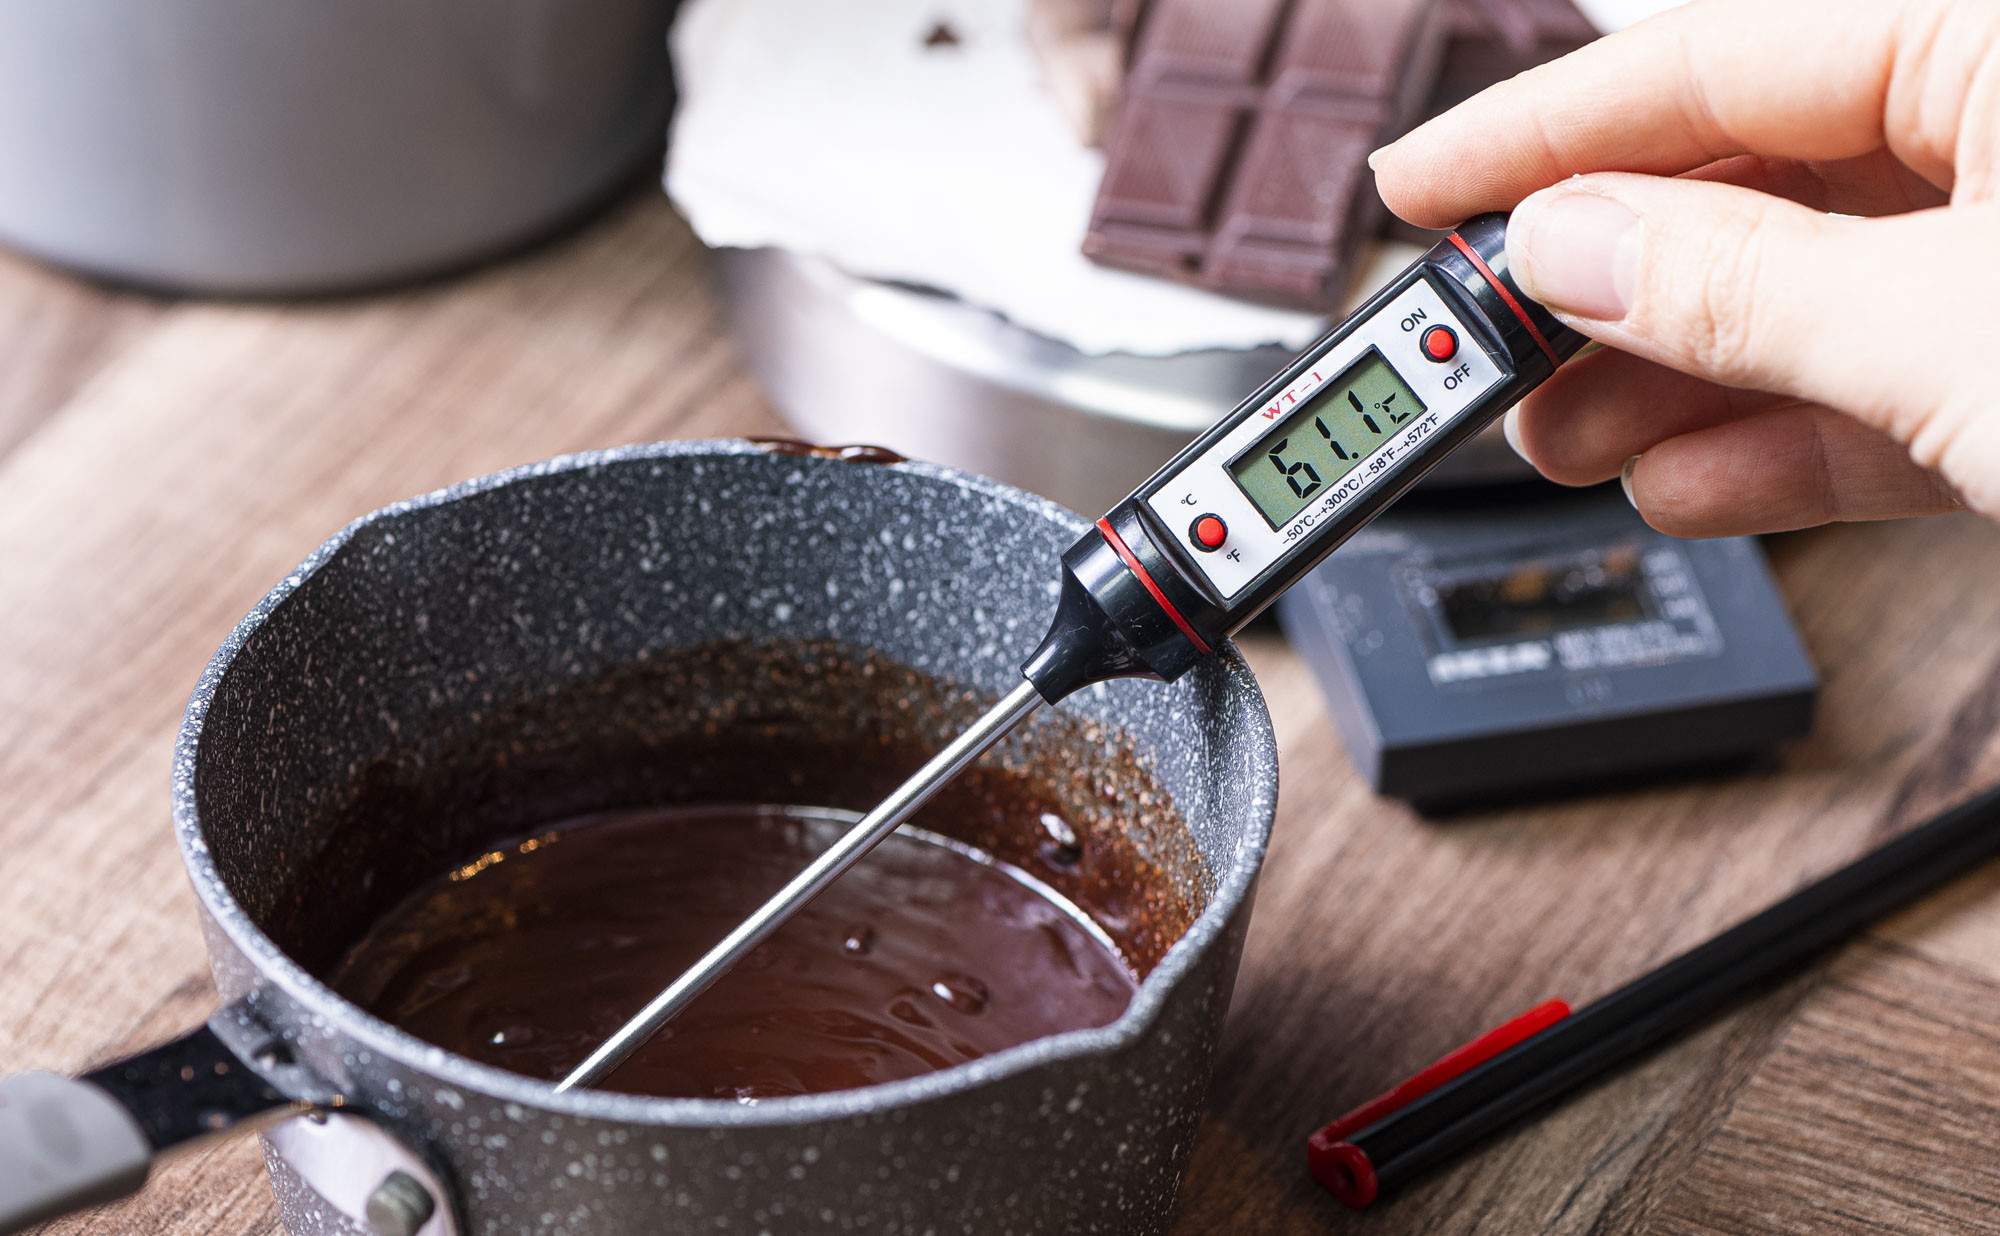 Thermomètre alimentaire numérique - Thermomètre de cuisine à